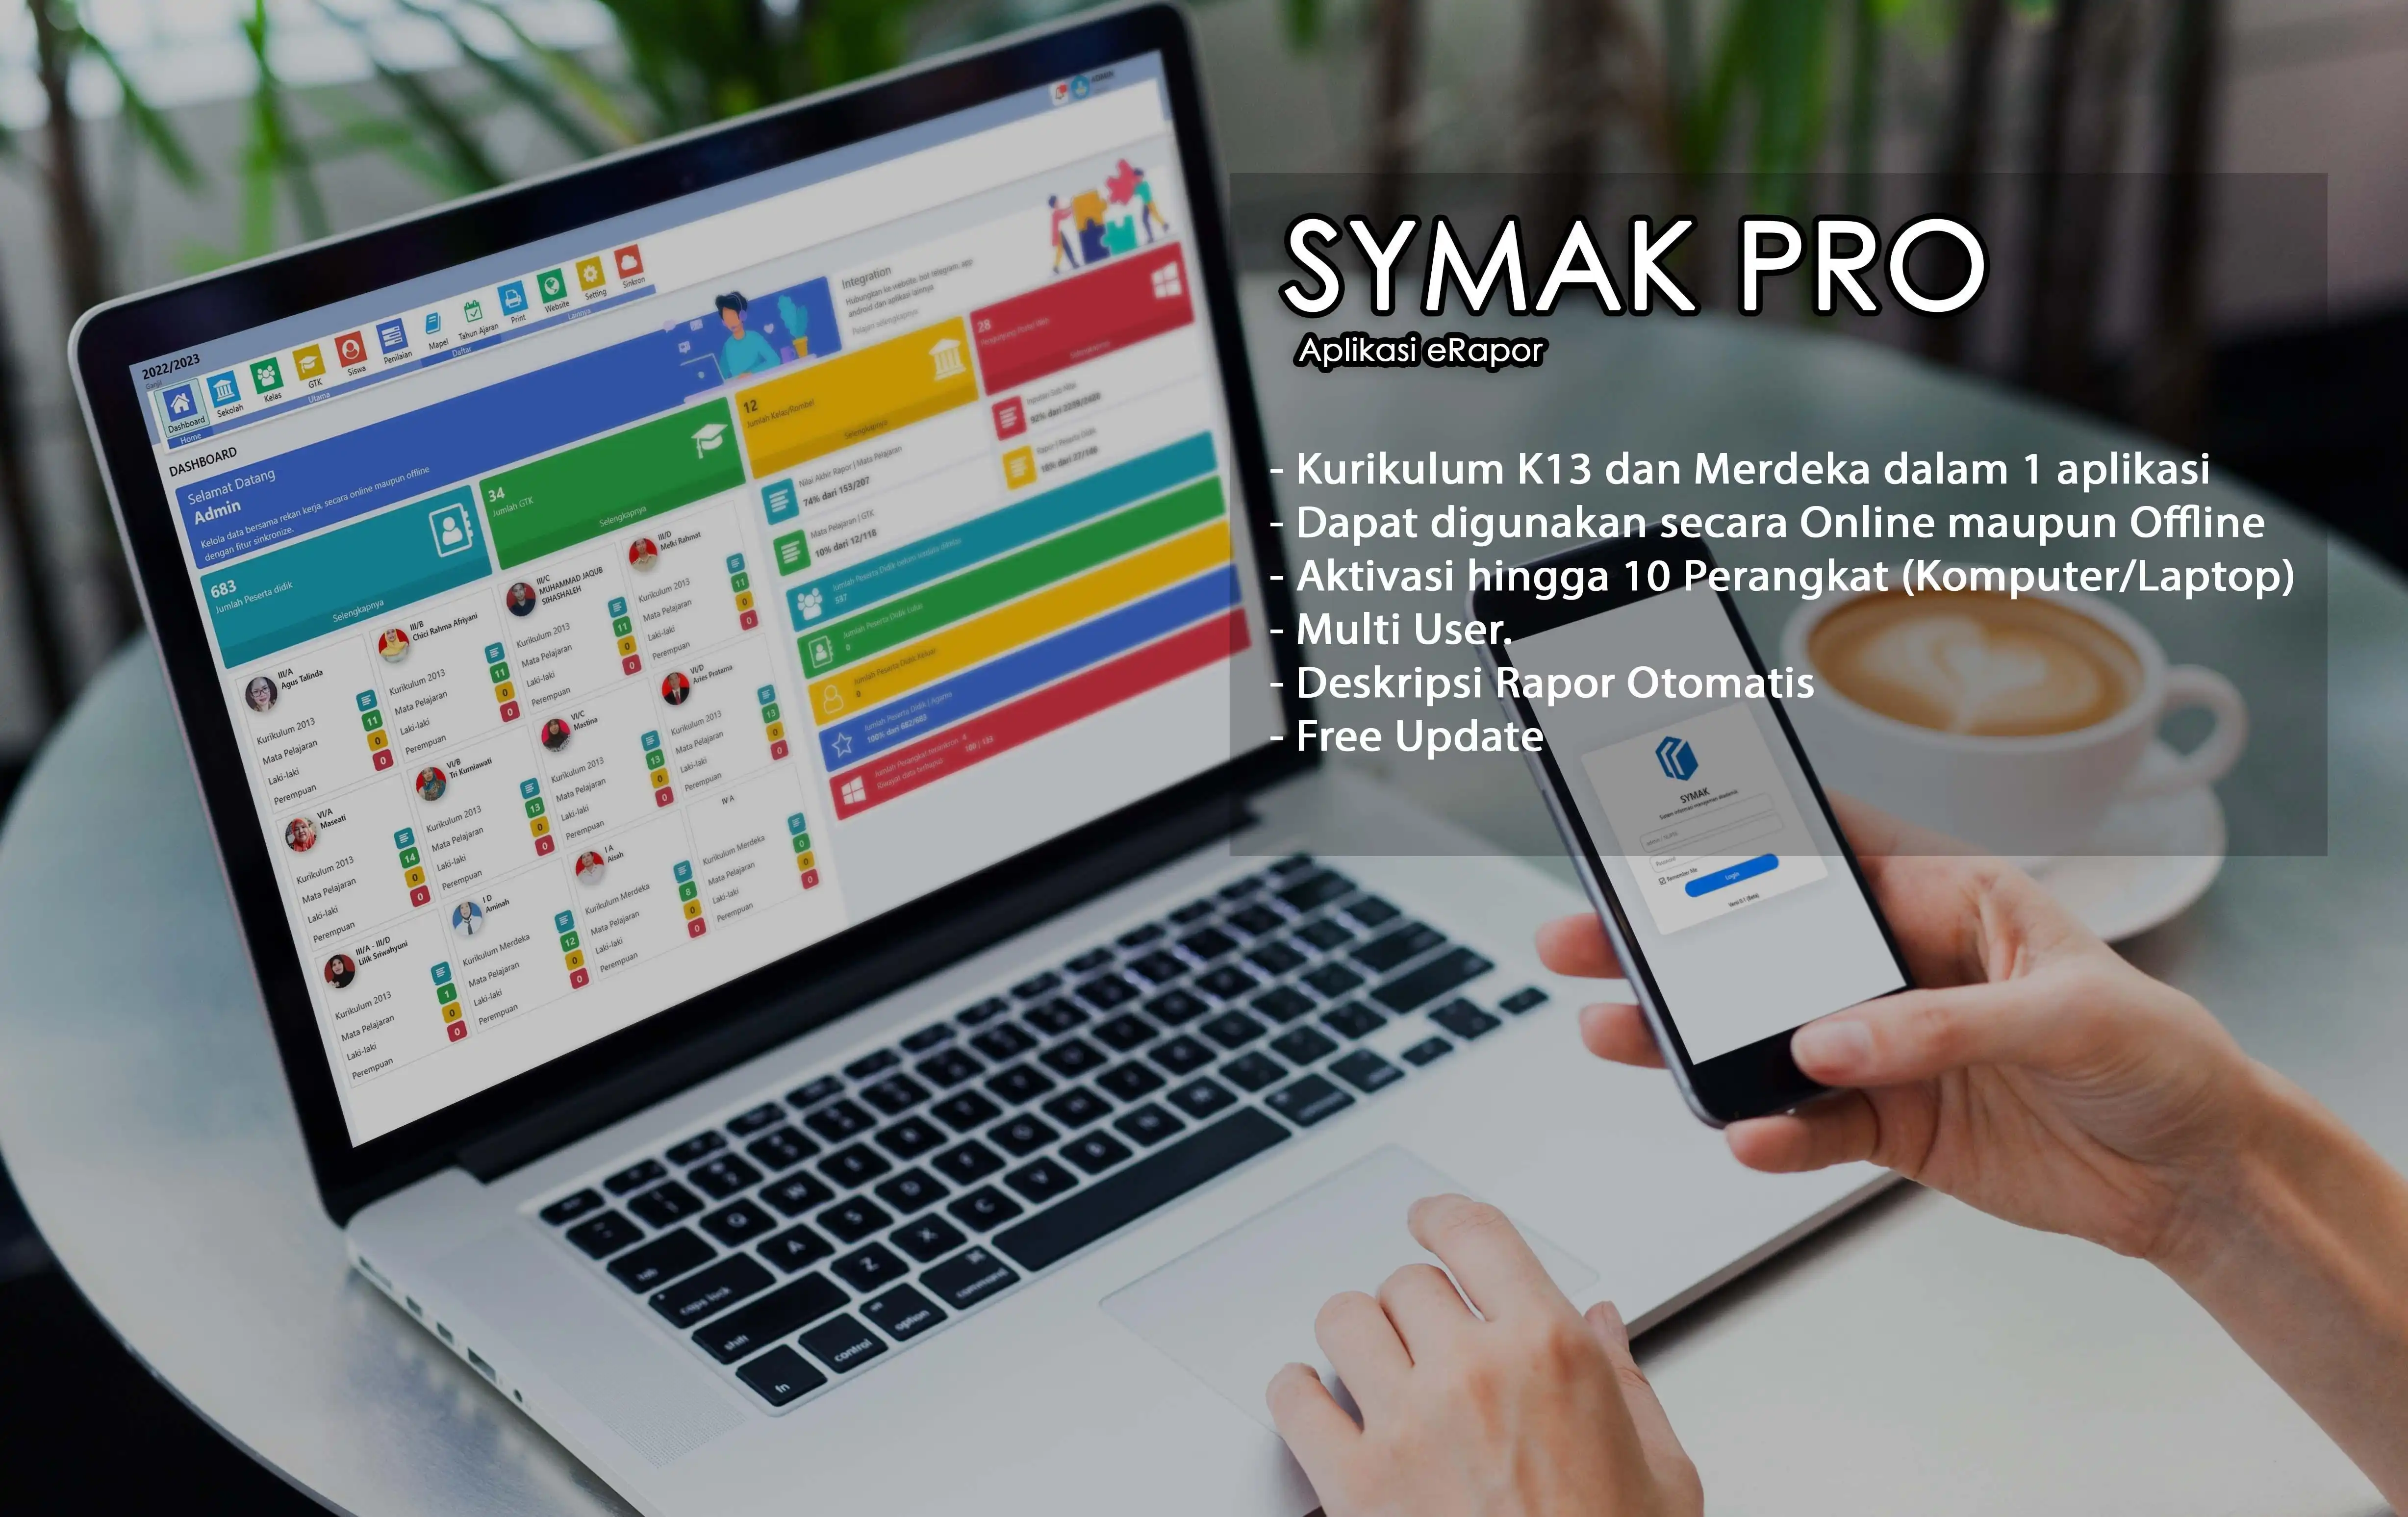 הורד את כלי האינטרנט או אפליקציית האינטרנט Symak ​​Pro (Aplikasi Rapor Merdeka)